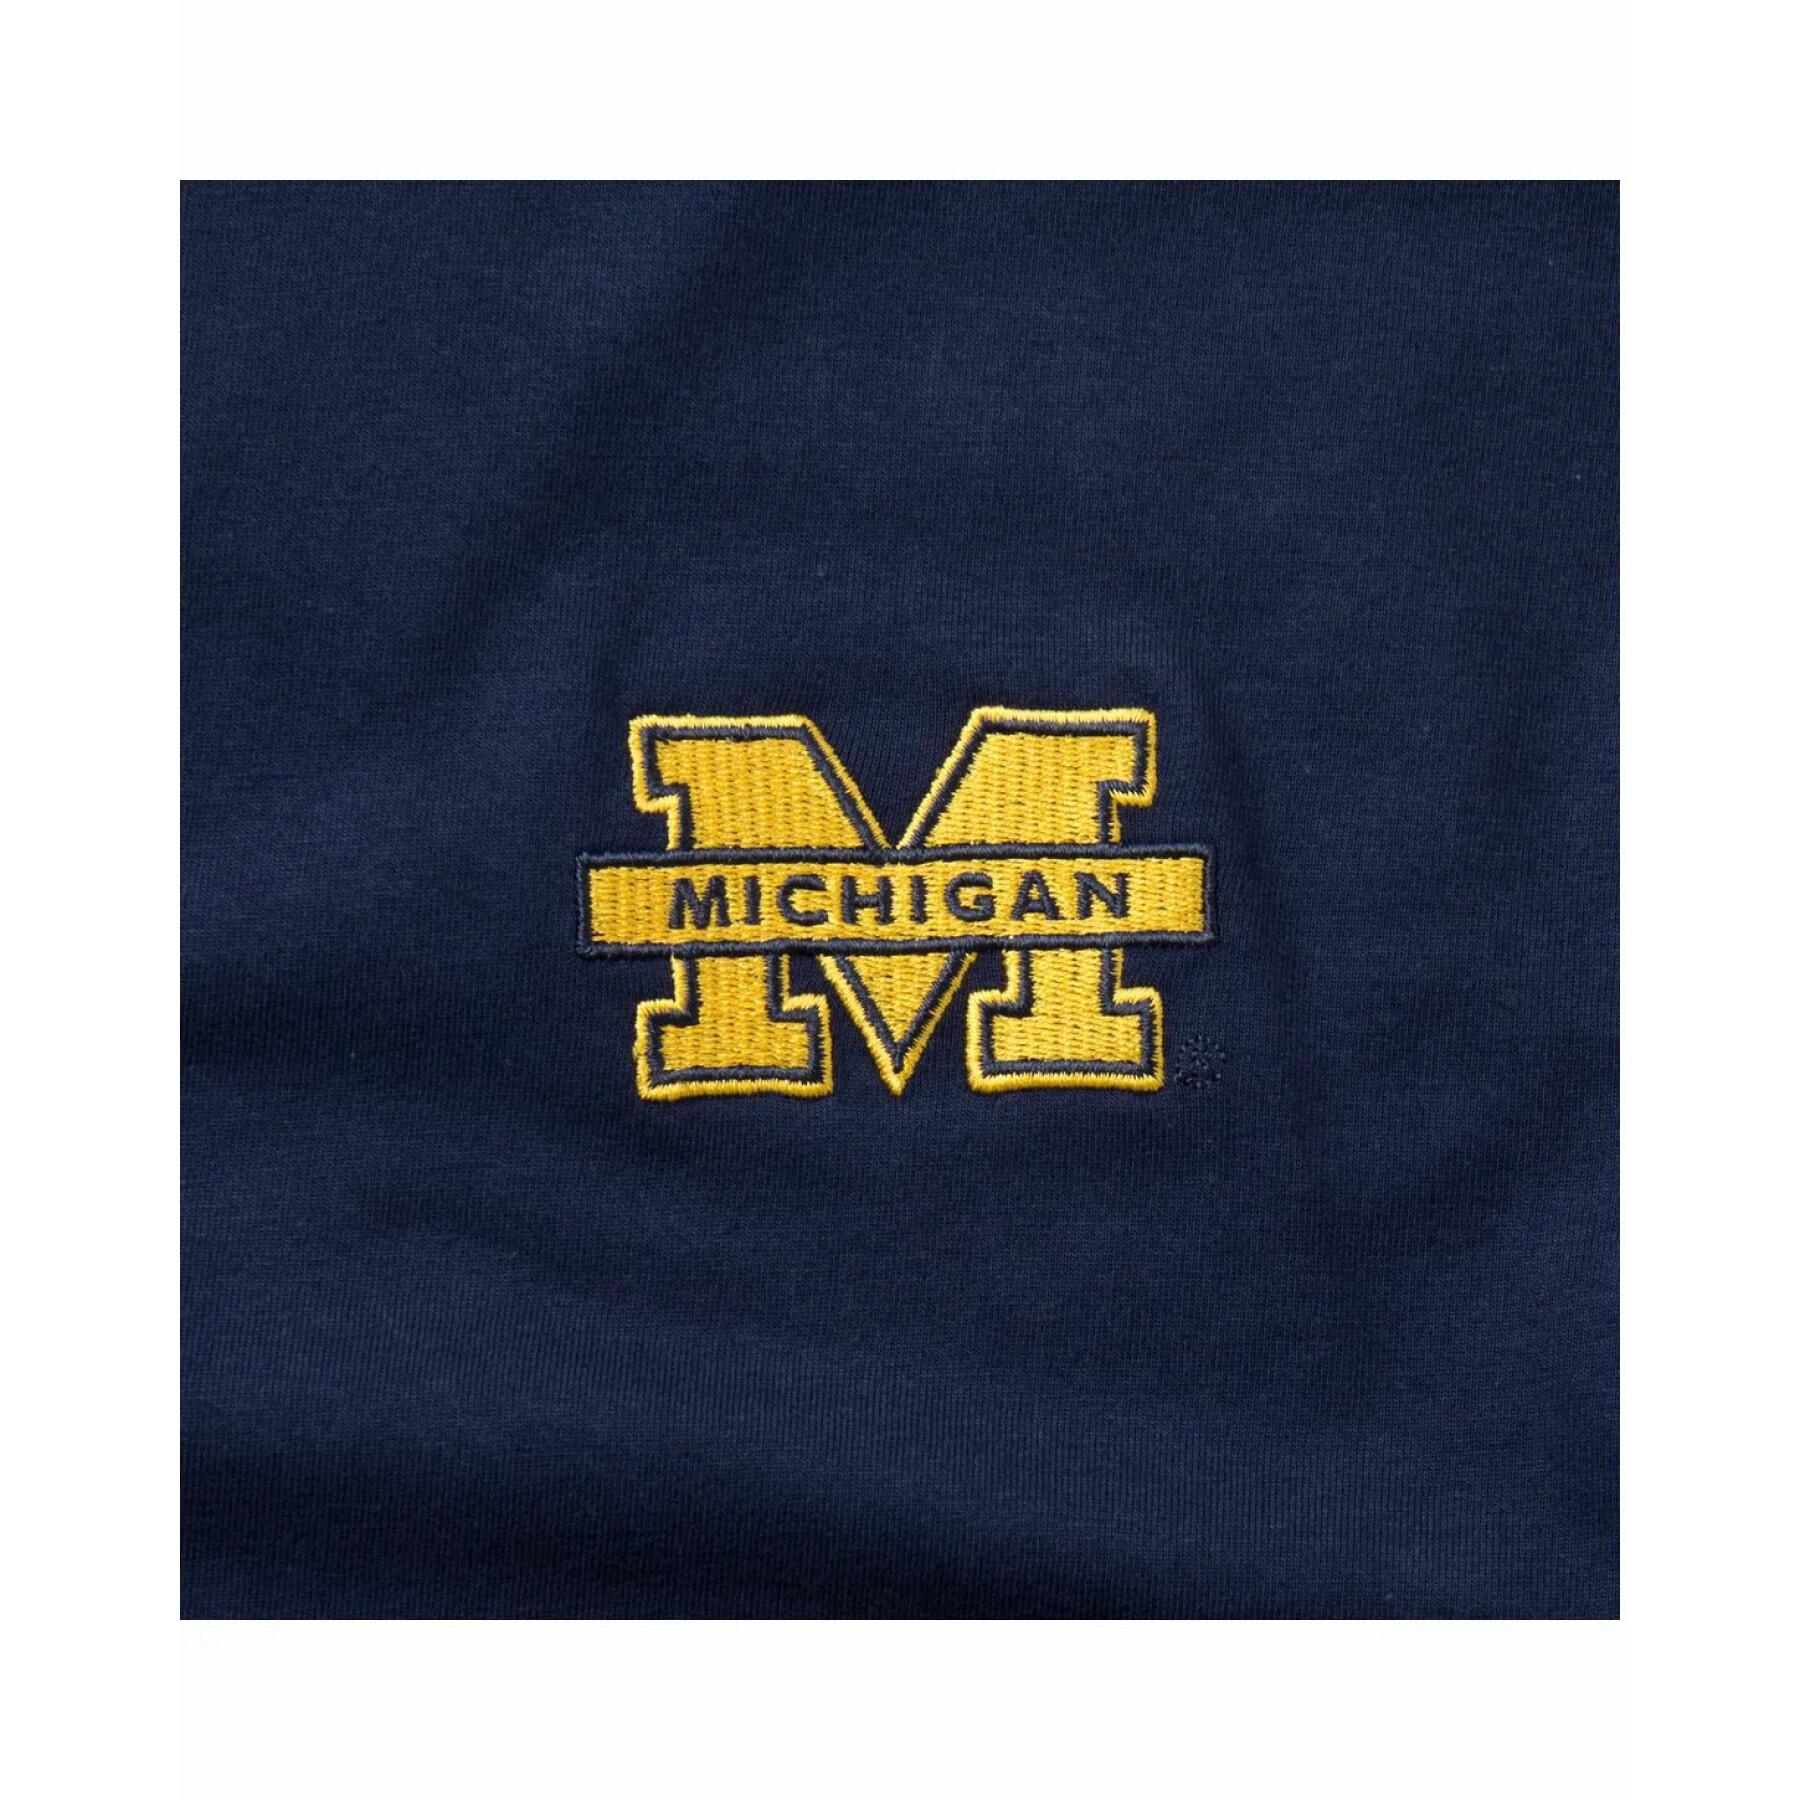 T-shirt universität michigan gesticktes logo